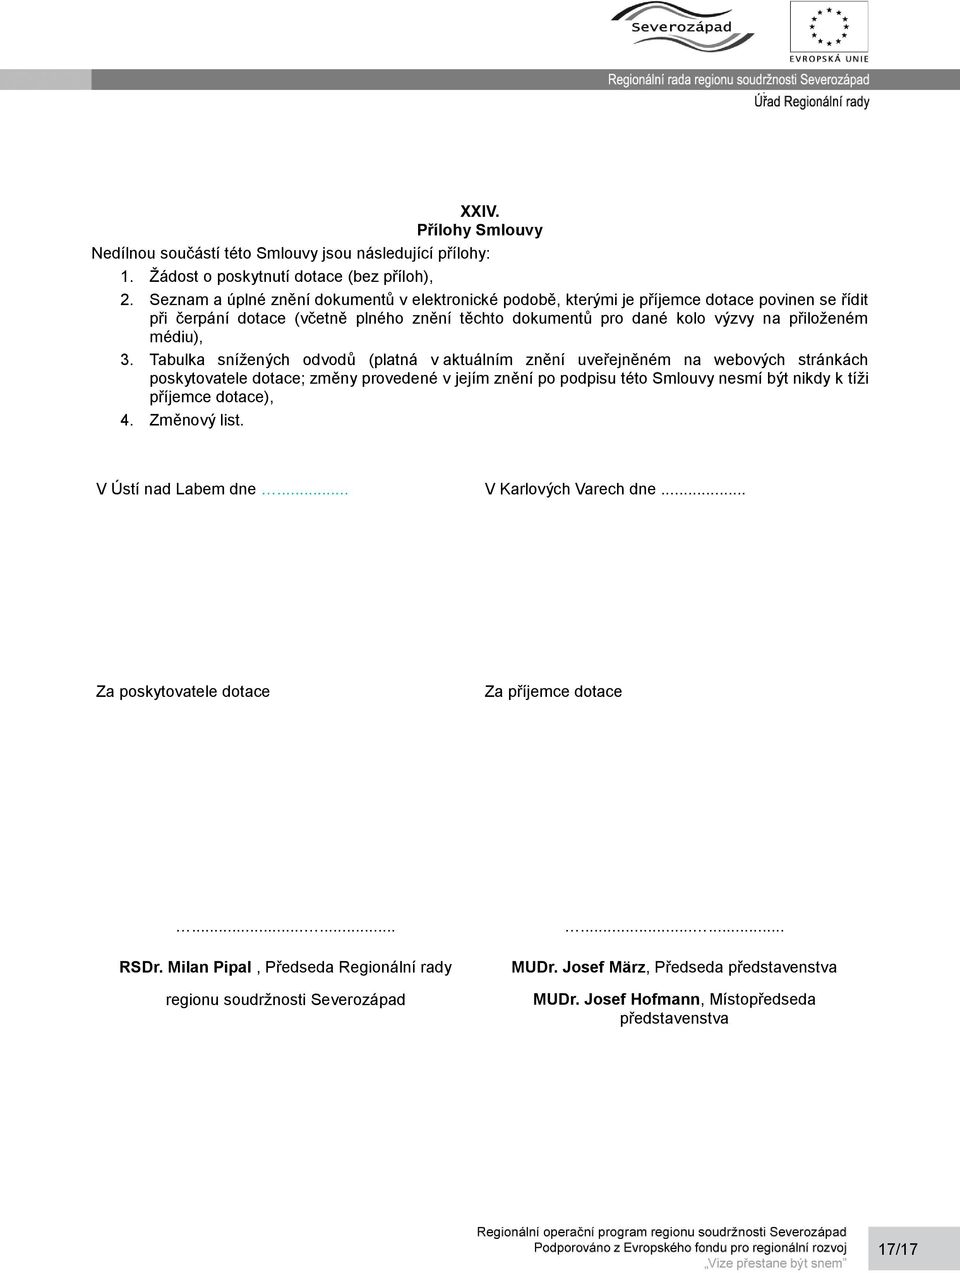 Tabulka snížených odvodů (platná v aktuálním znění uveřejněném na webových stránkách poskytovatele dotace; změny provedené v jejím znění po podpisu této Smlouvy nesmí být nikdy k tíži příjemce